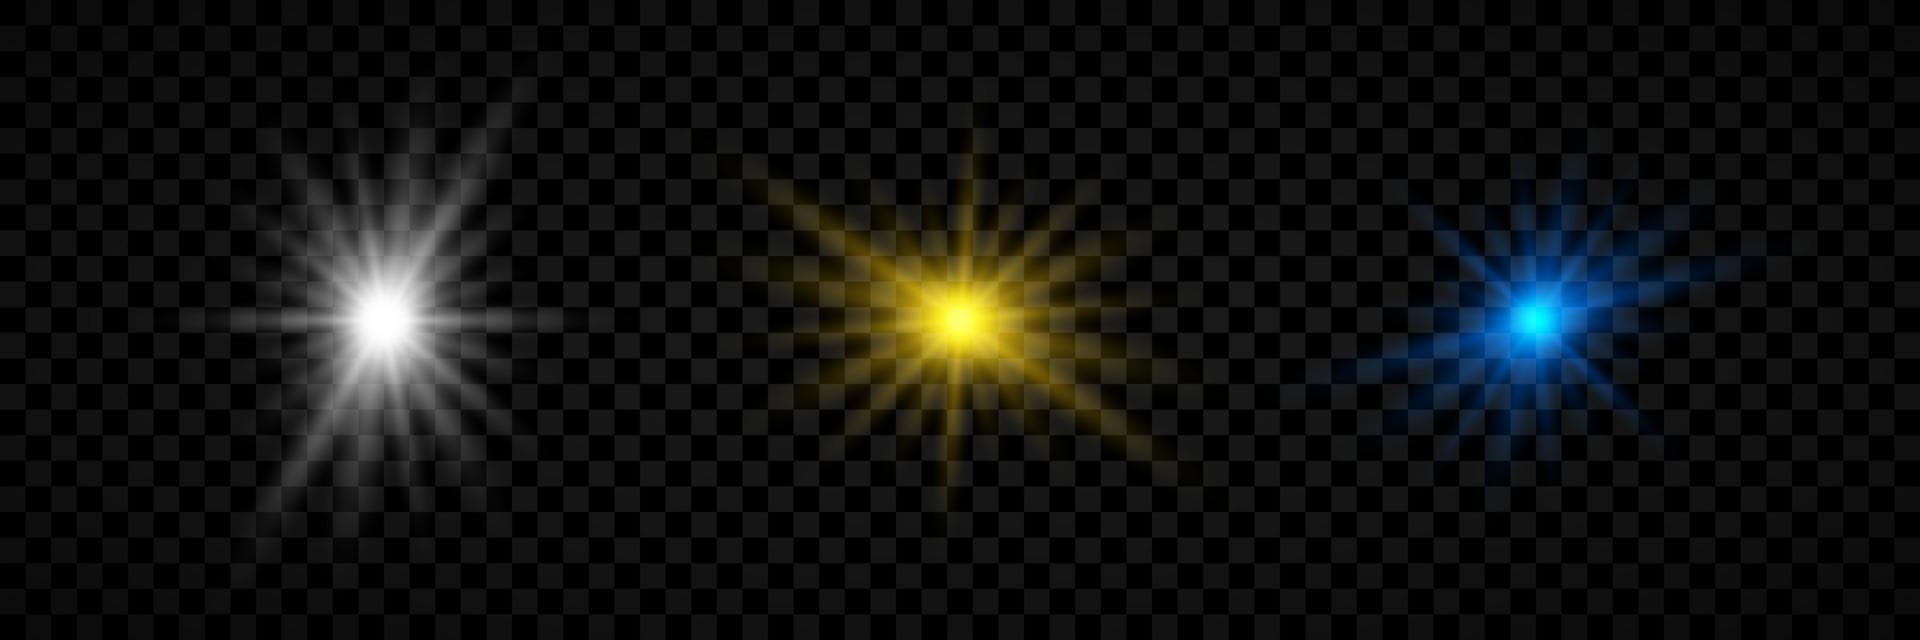 efeito de luz de reflexos de lente. conjunto de três efeitos starburst de luzes brilhantes brancas, amarelas e azuis com brilhos em um fundo transparente. ilustração vetorial vetor